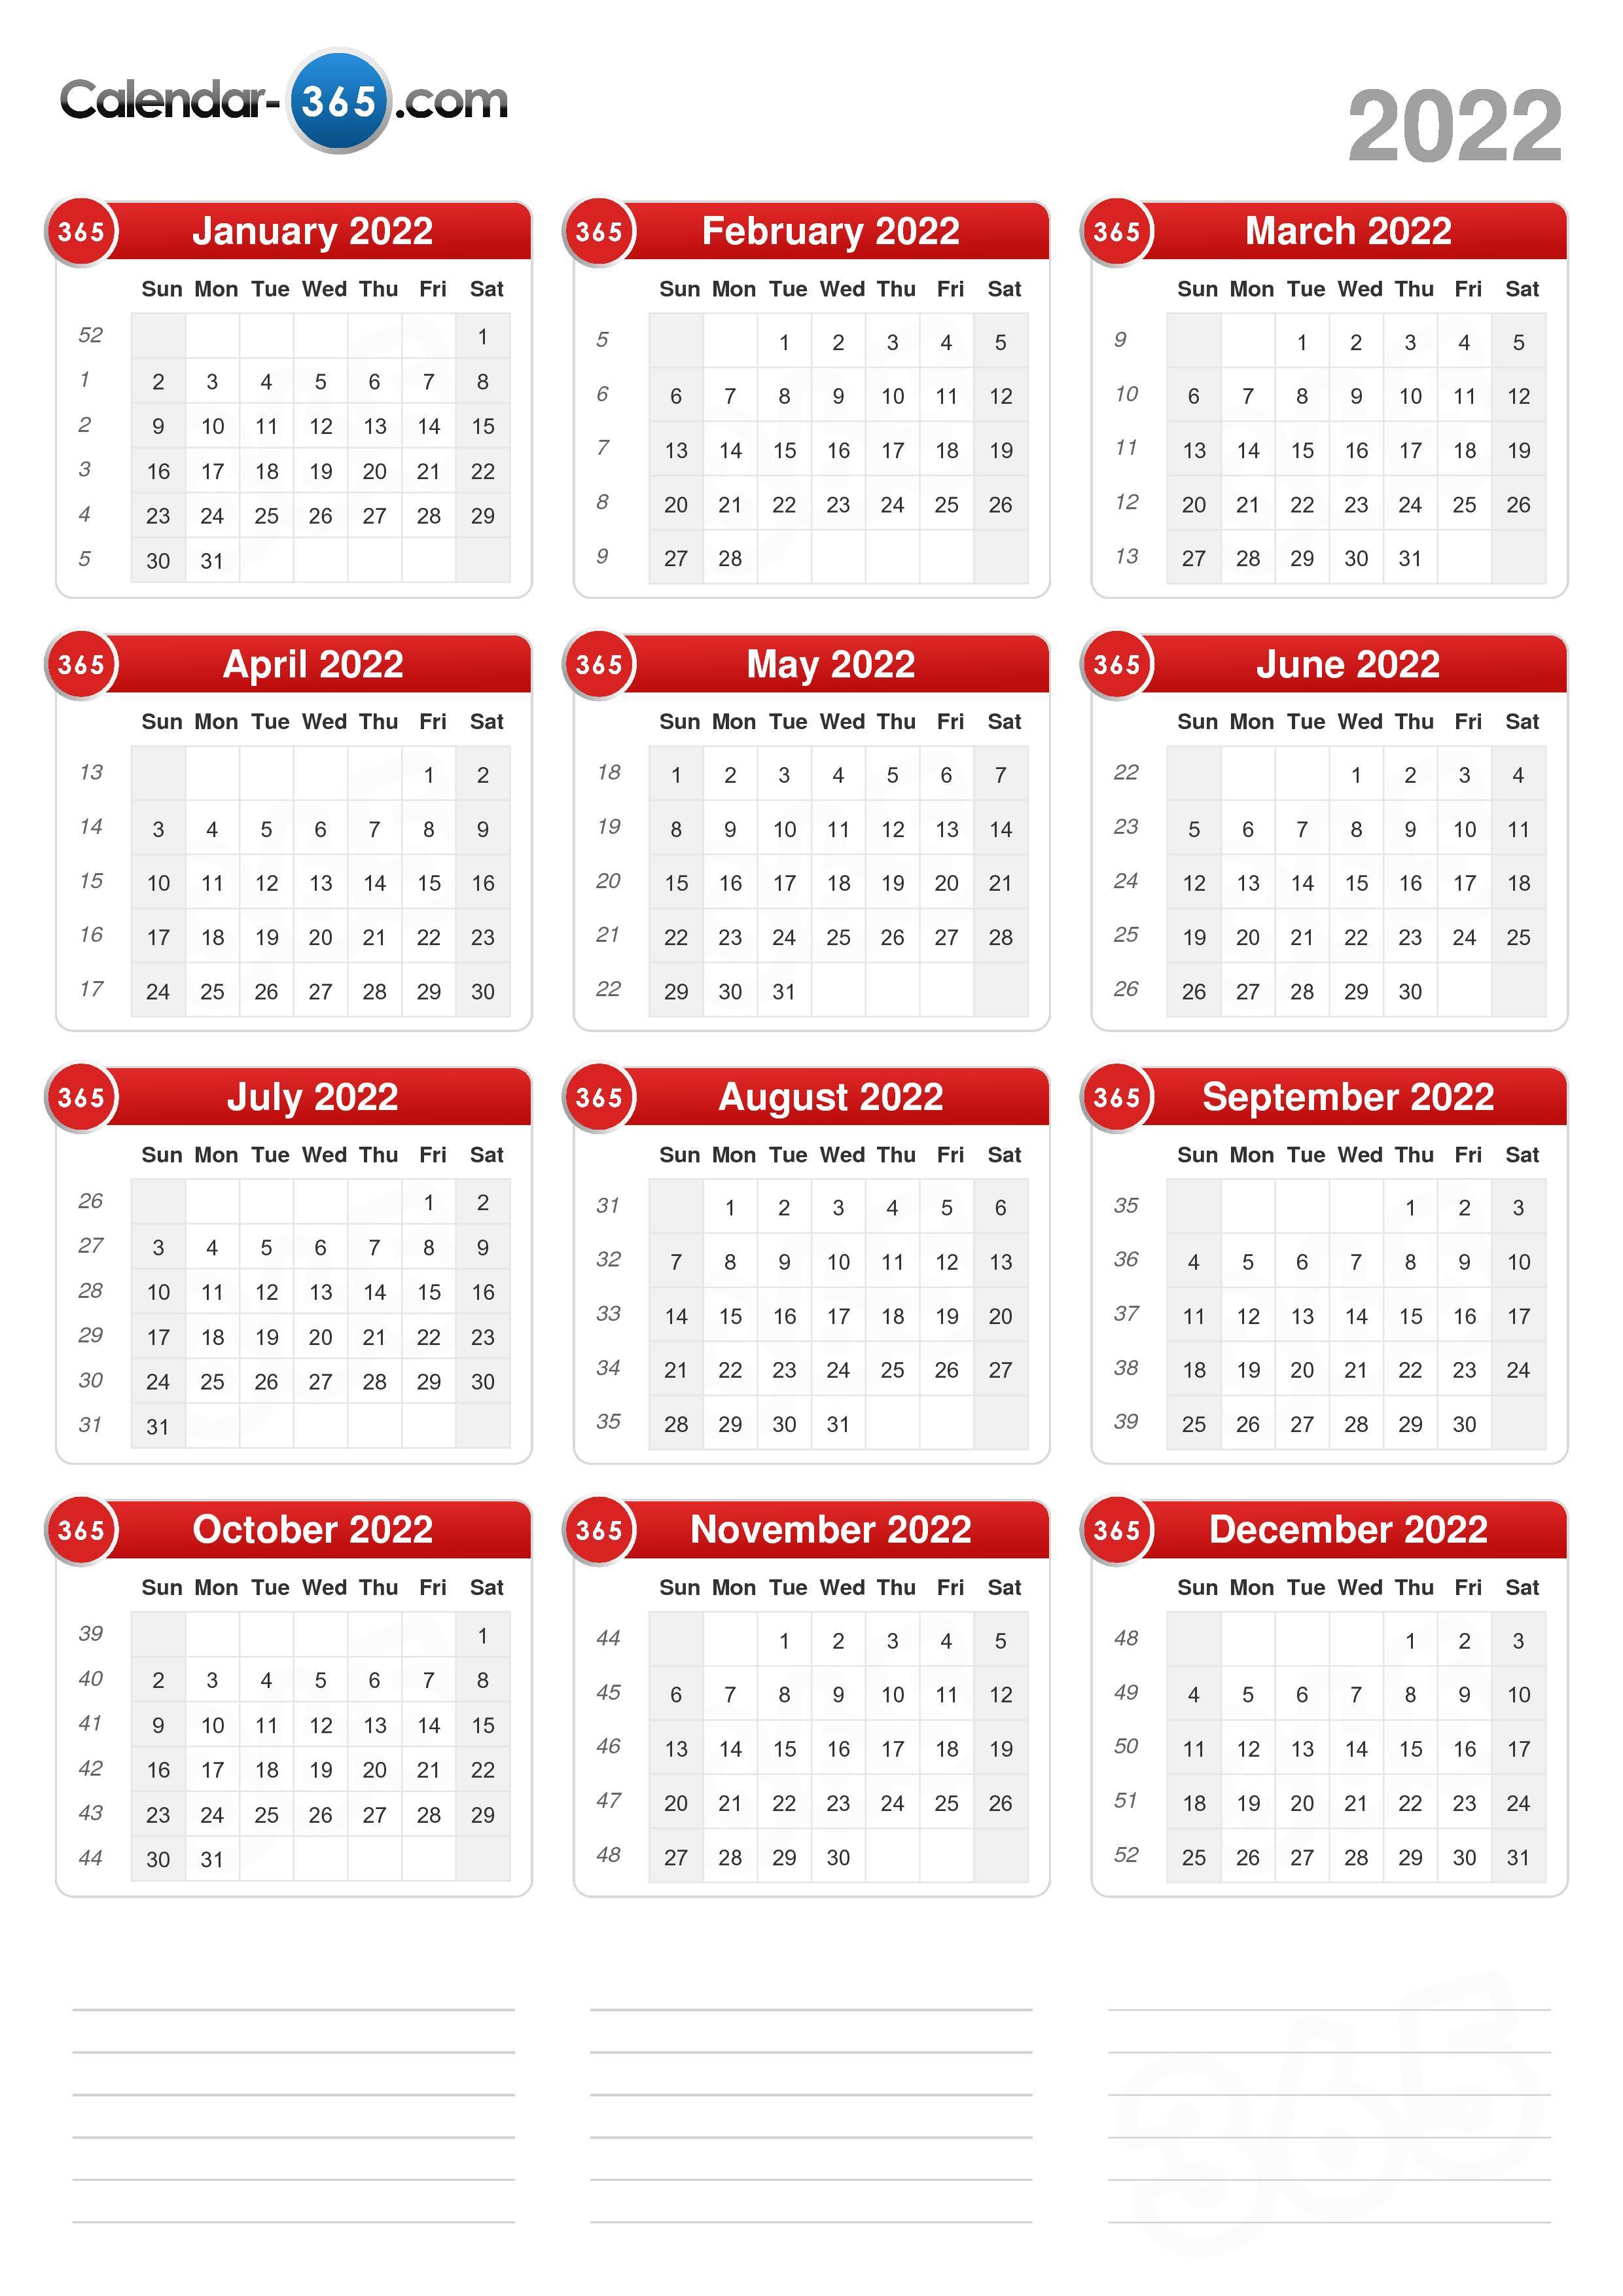 Css Calendar 2022 2022 Calendar